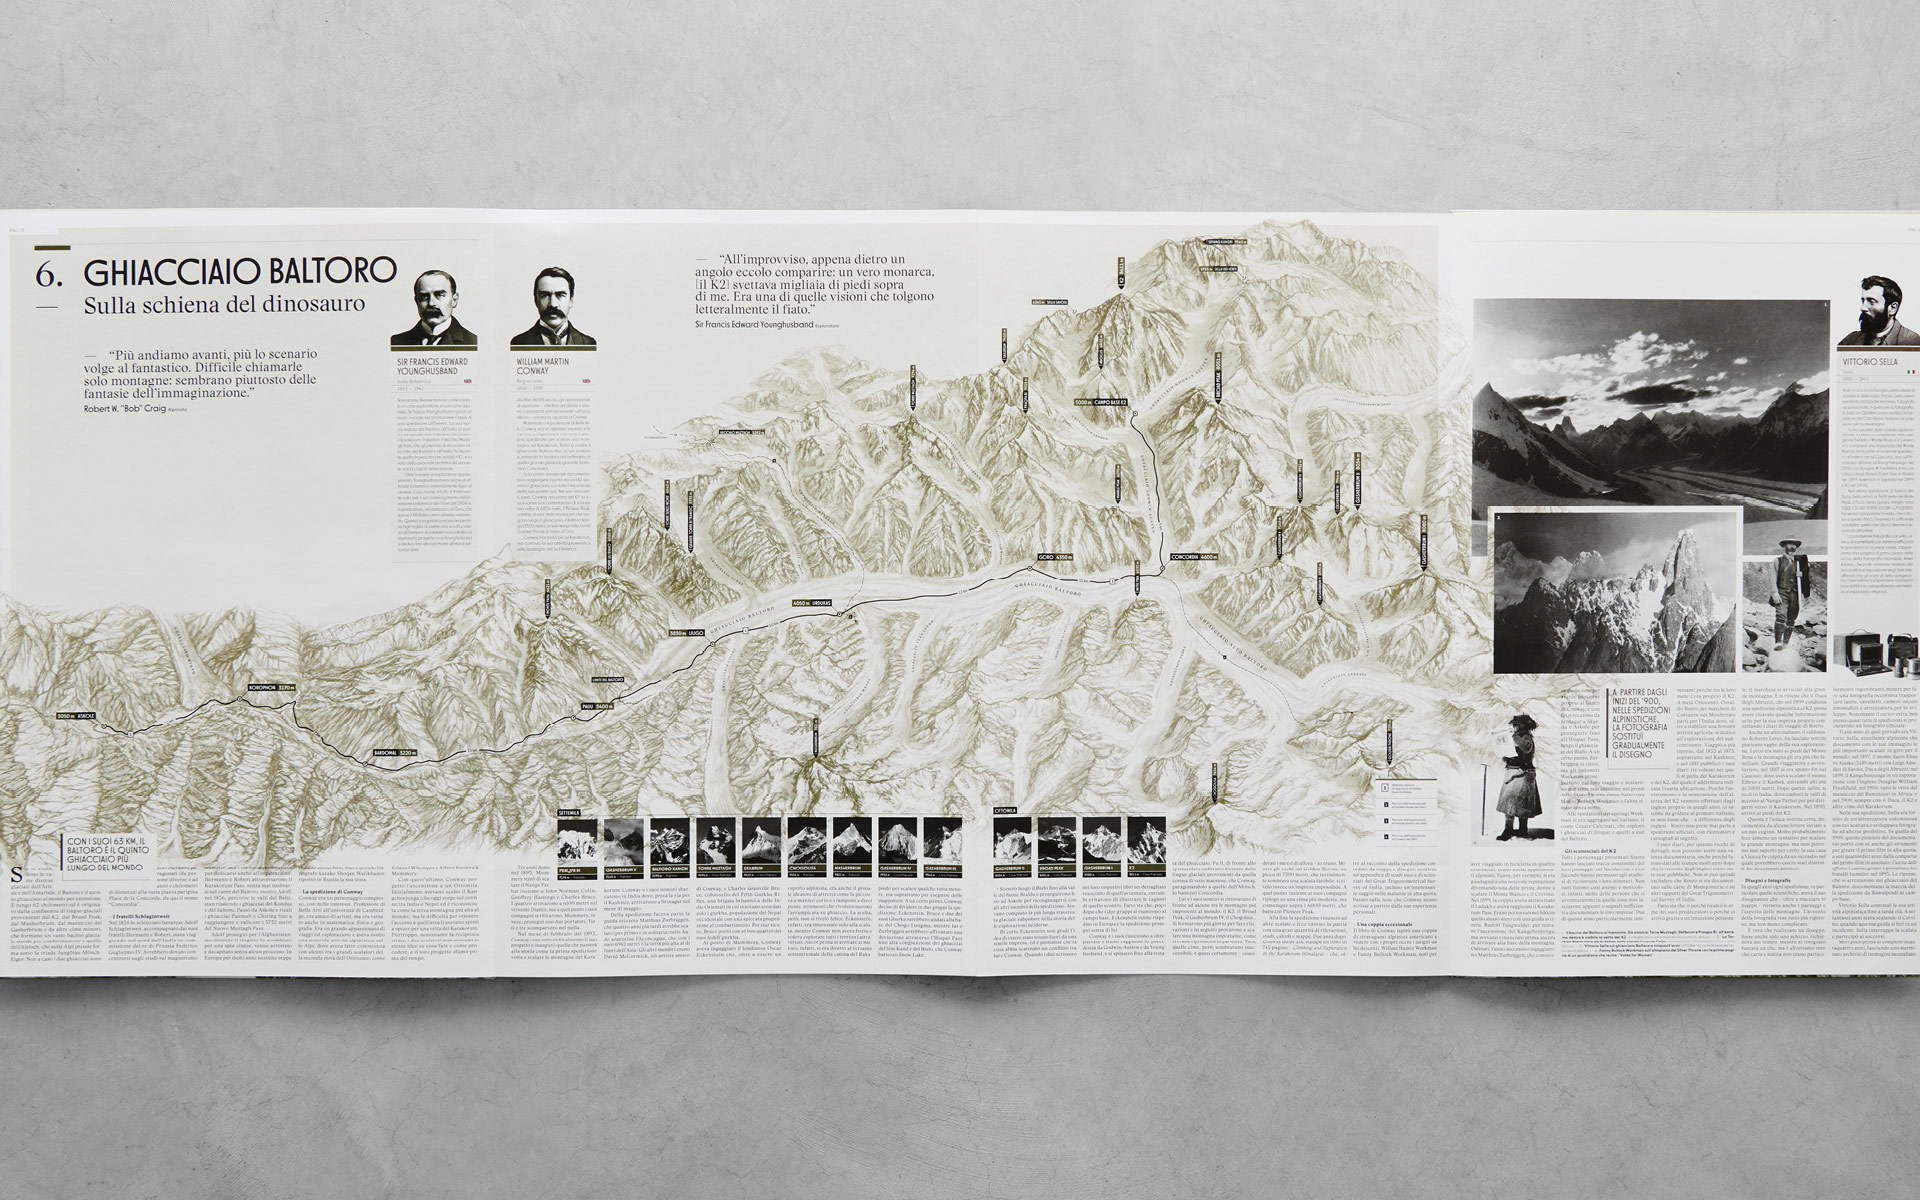 Anteprima delle pagine interne del libro' K2 Storia della Montagna Impossibil'e pubblicato da Rizzoli Lizard